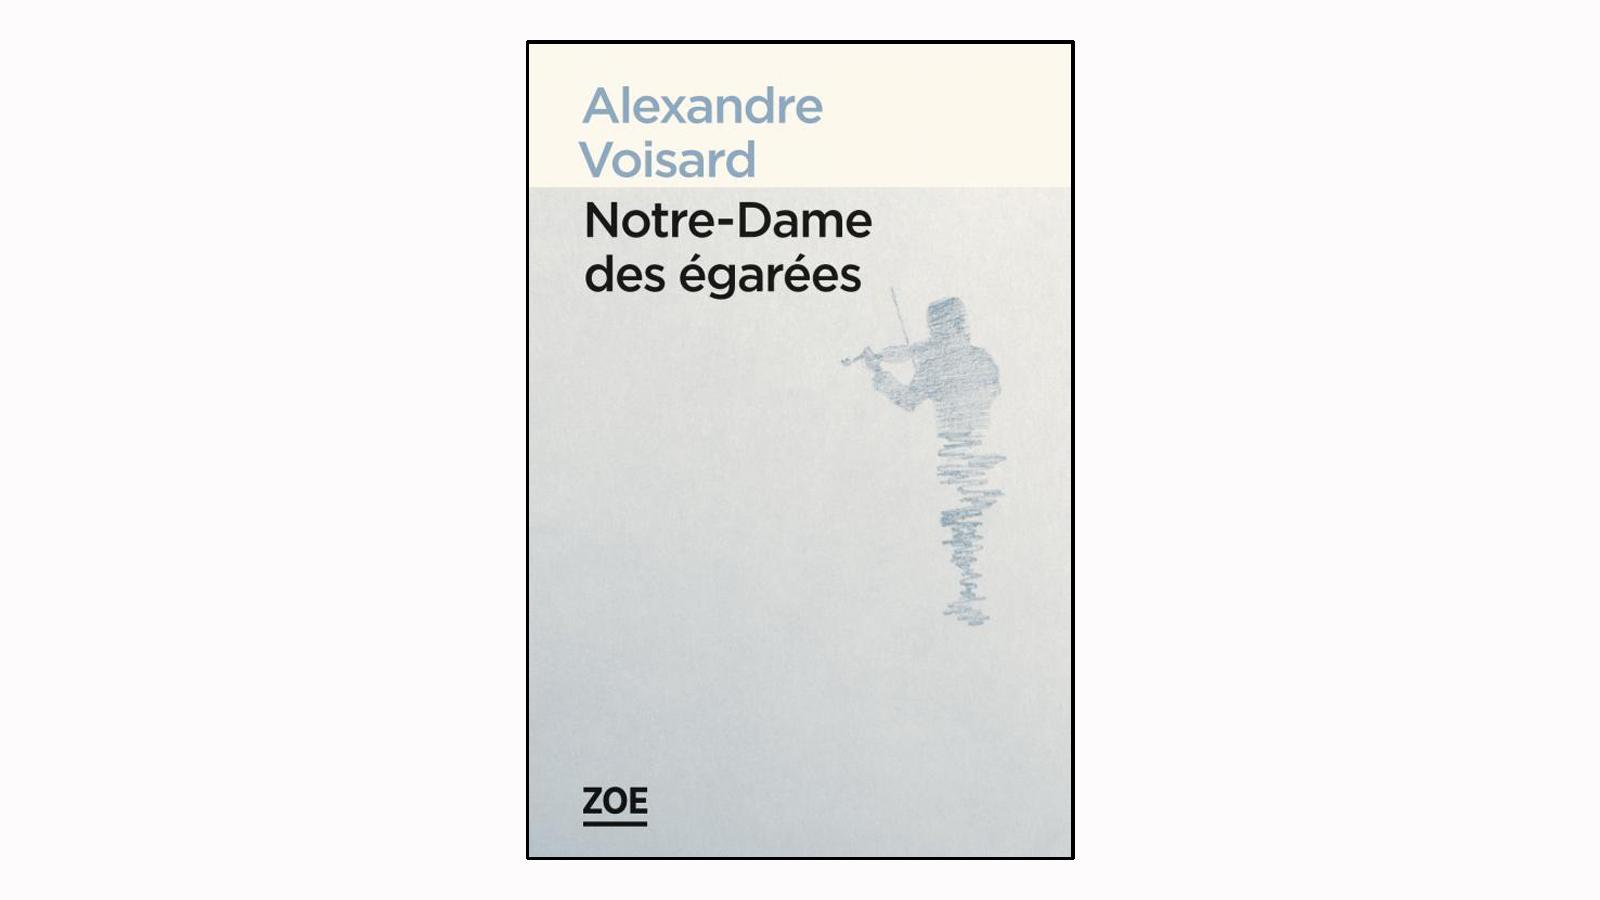 La couverture du livre "Notre-Dame des égarées" d'Alexandre Voisard. [Editions Zoé]